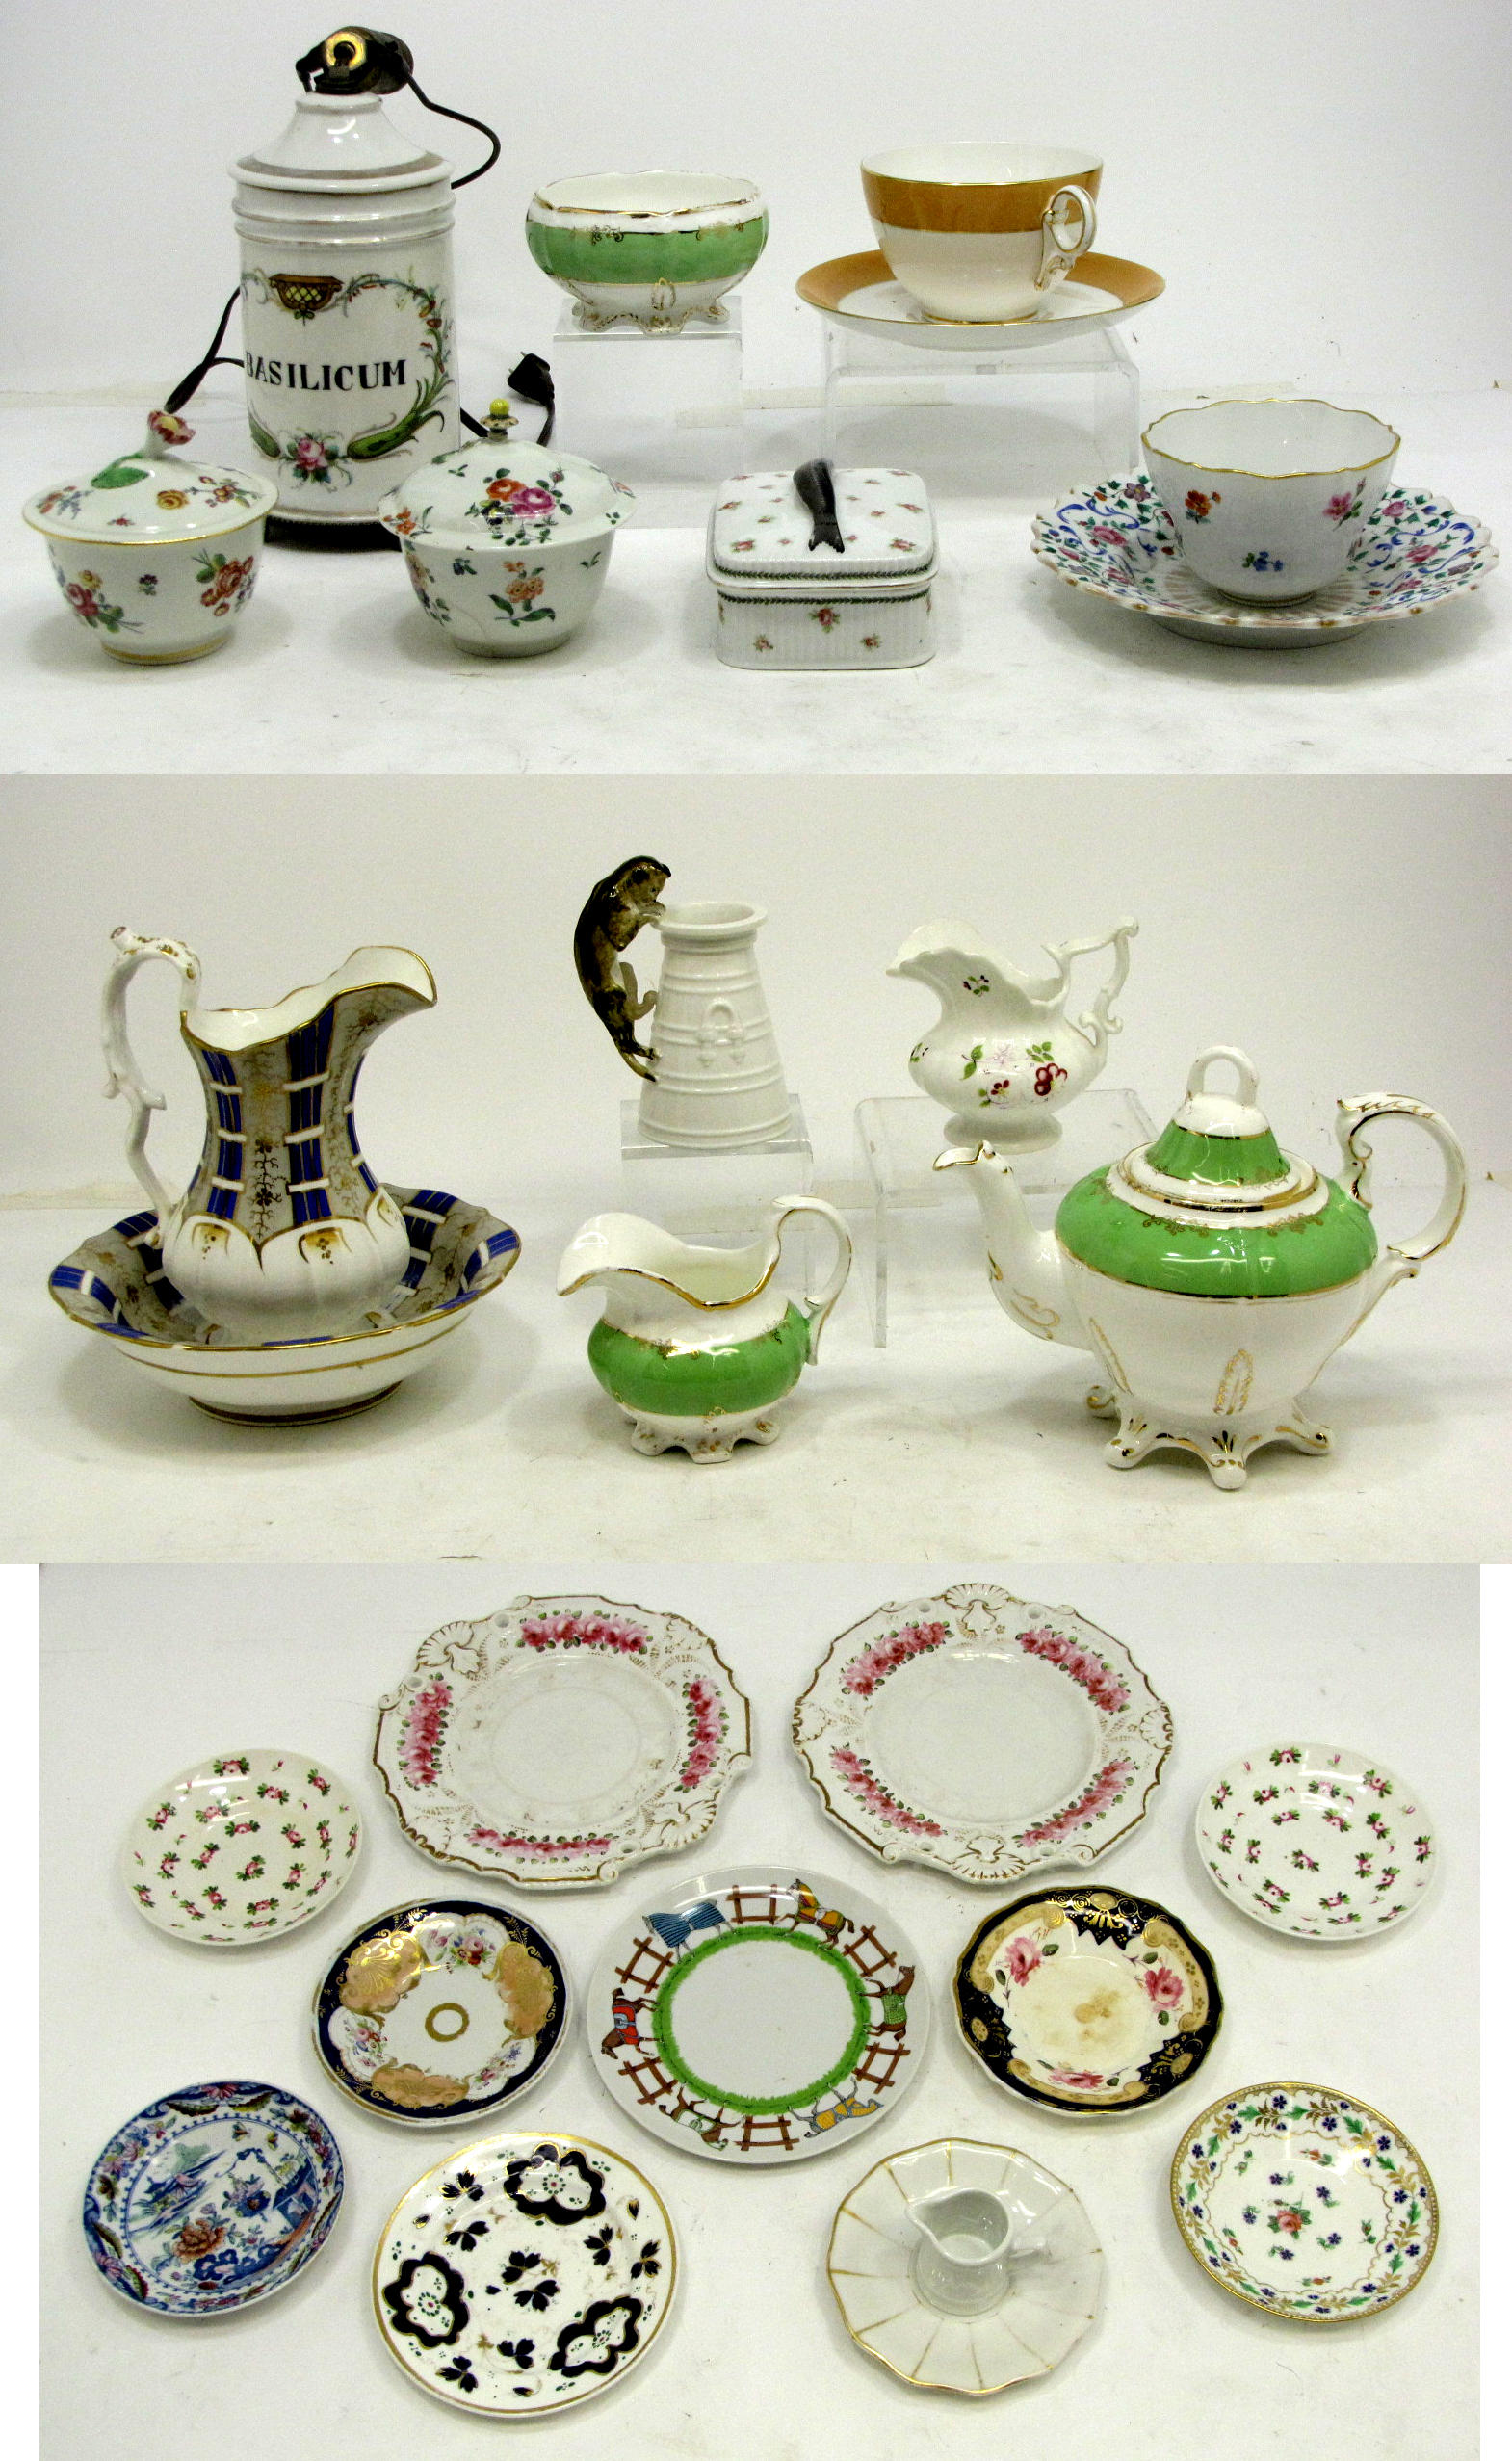 An assembled grouping of European porcelain